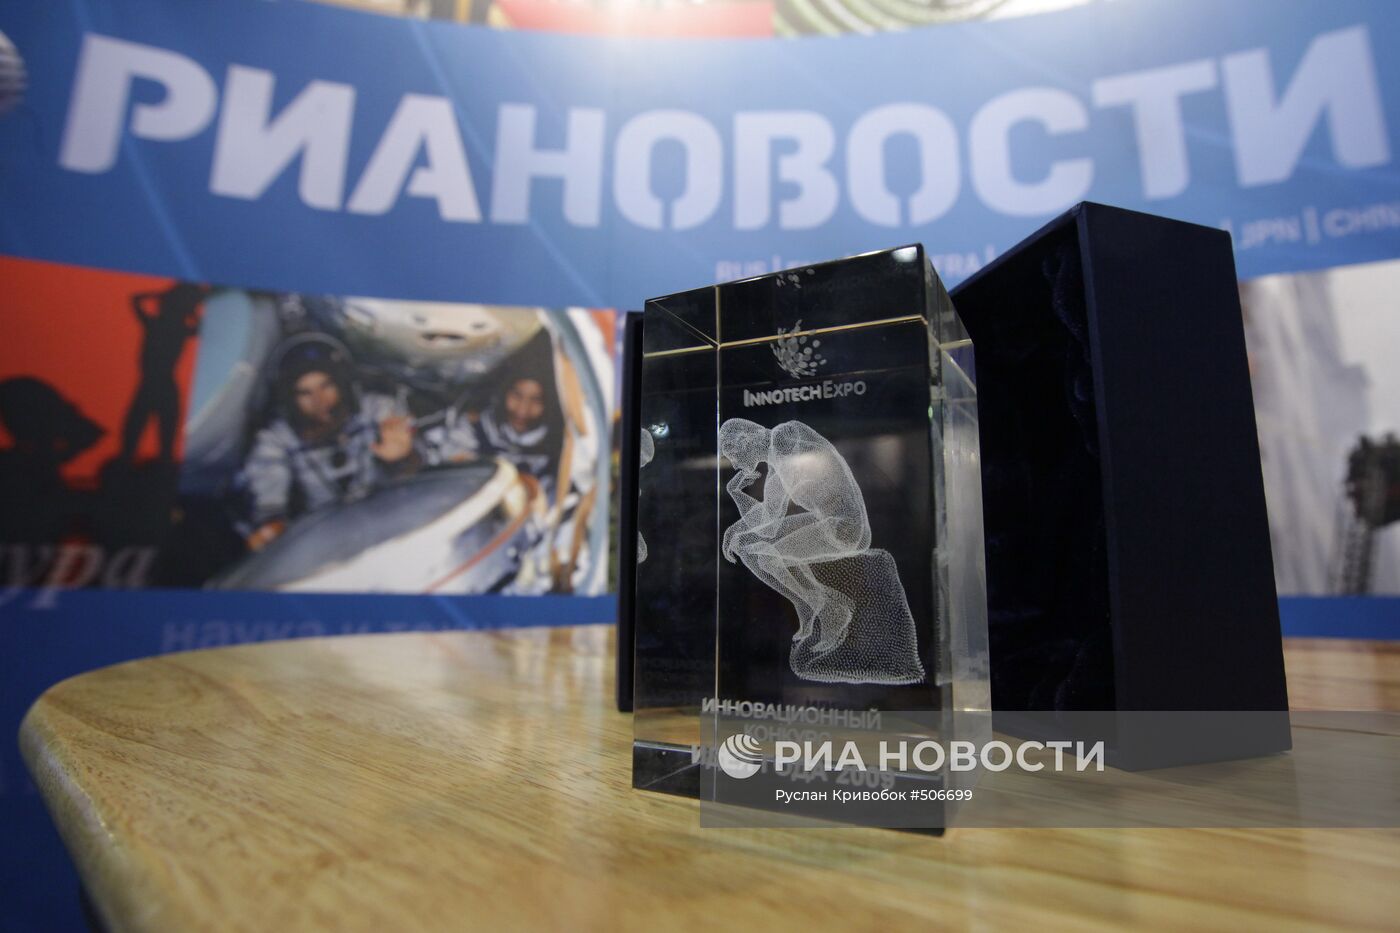 РИА Новости получило приз на международной выставке